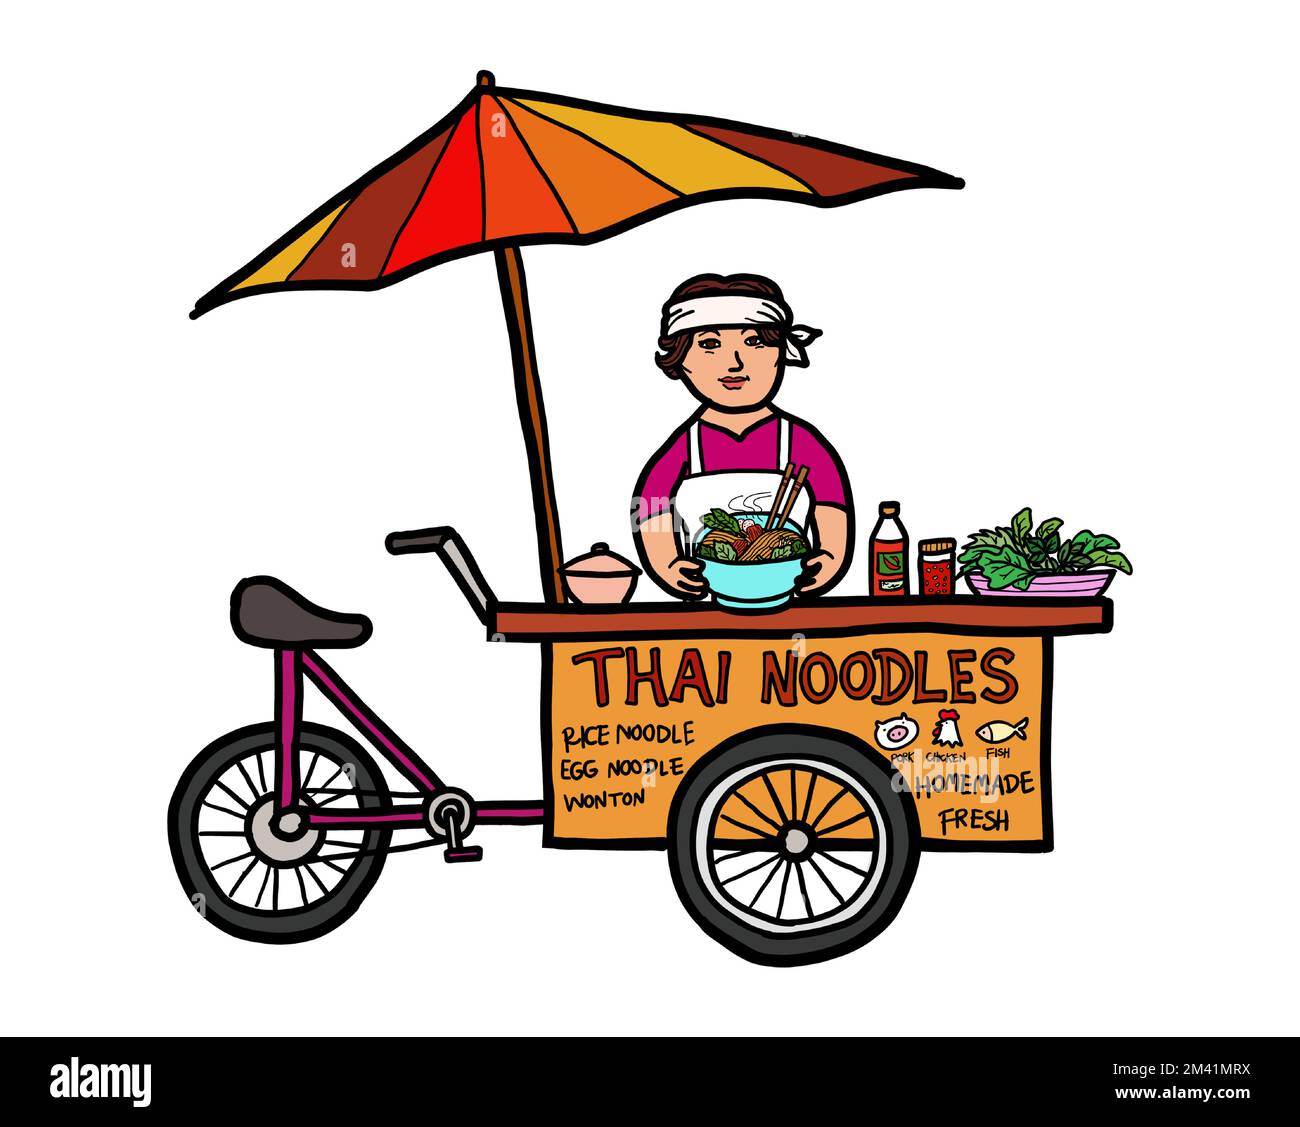 Eine junge asiatische Verkäuferin, die thailändische Nudeln auf einem Speisefahrrad verkauft. Street Food Thailand. Konzept der gesunden Ernährung. Vektor. Stock Vektor